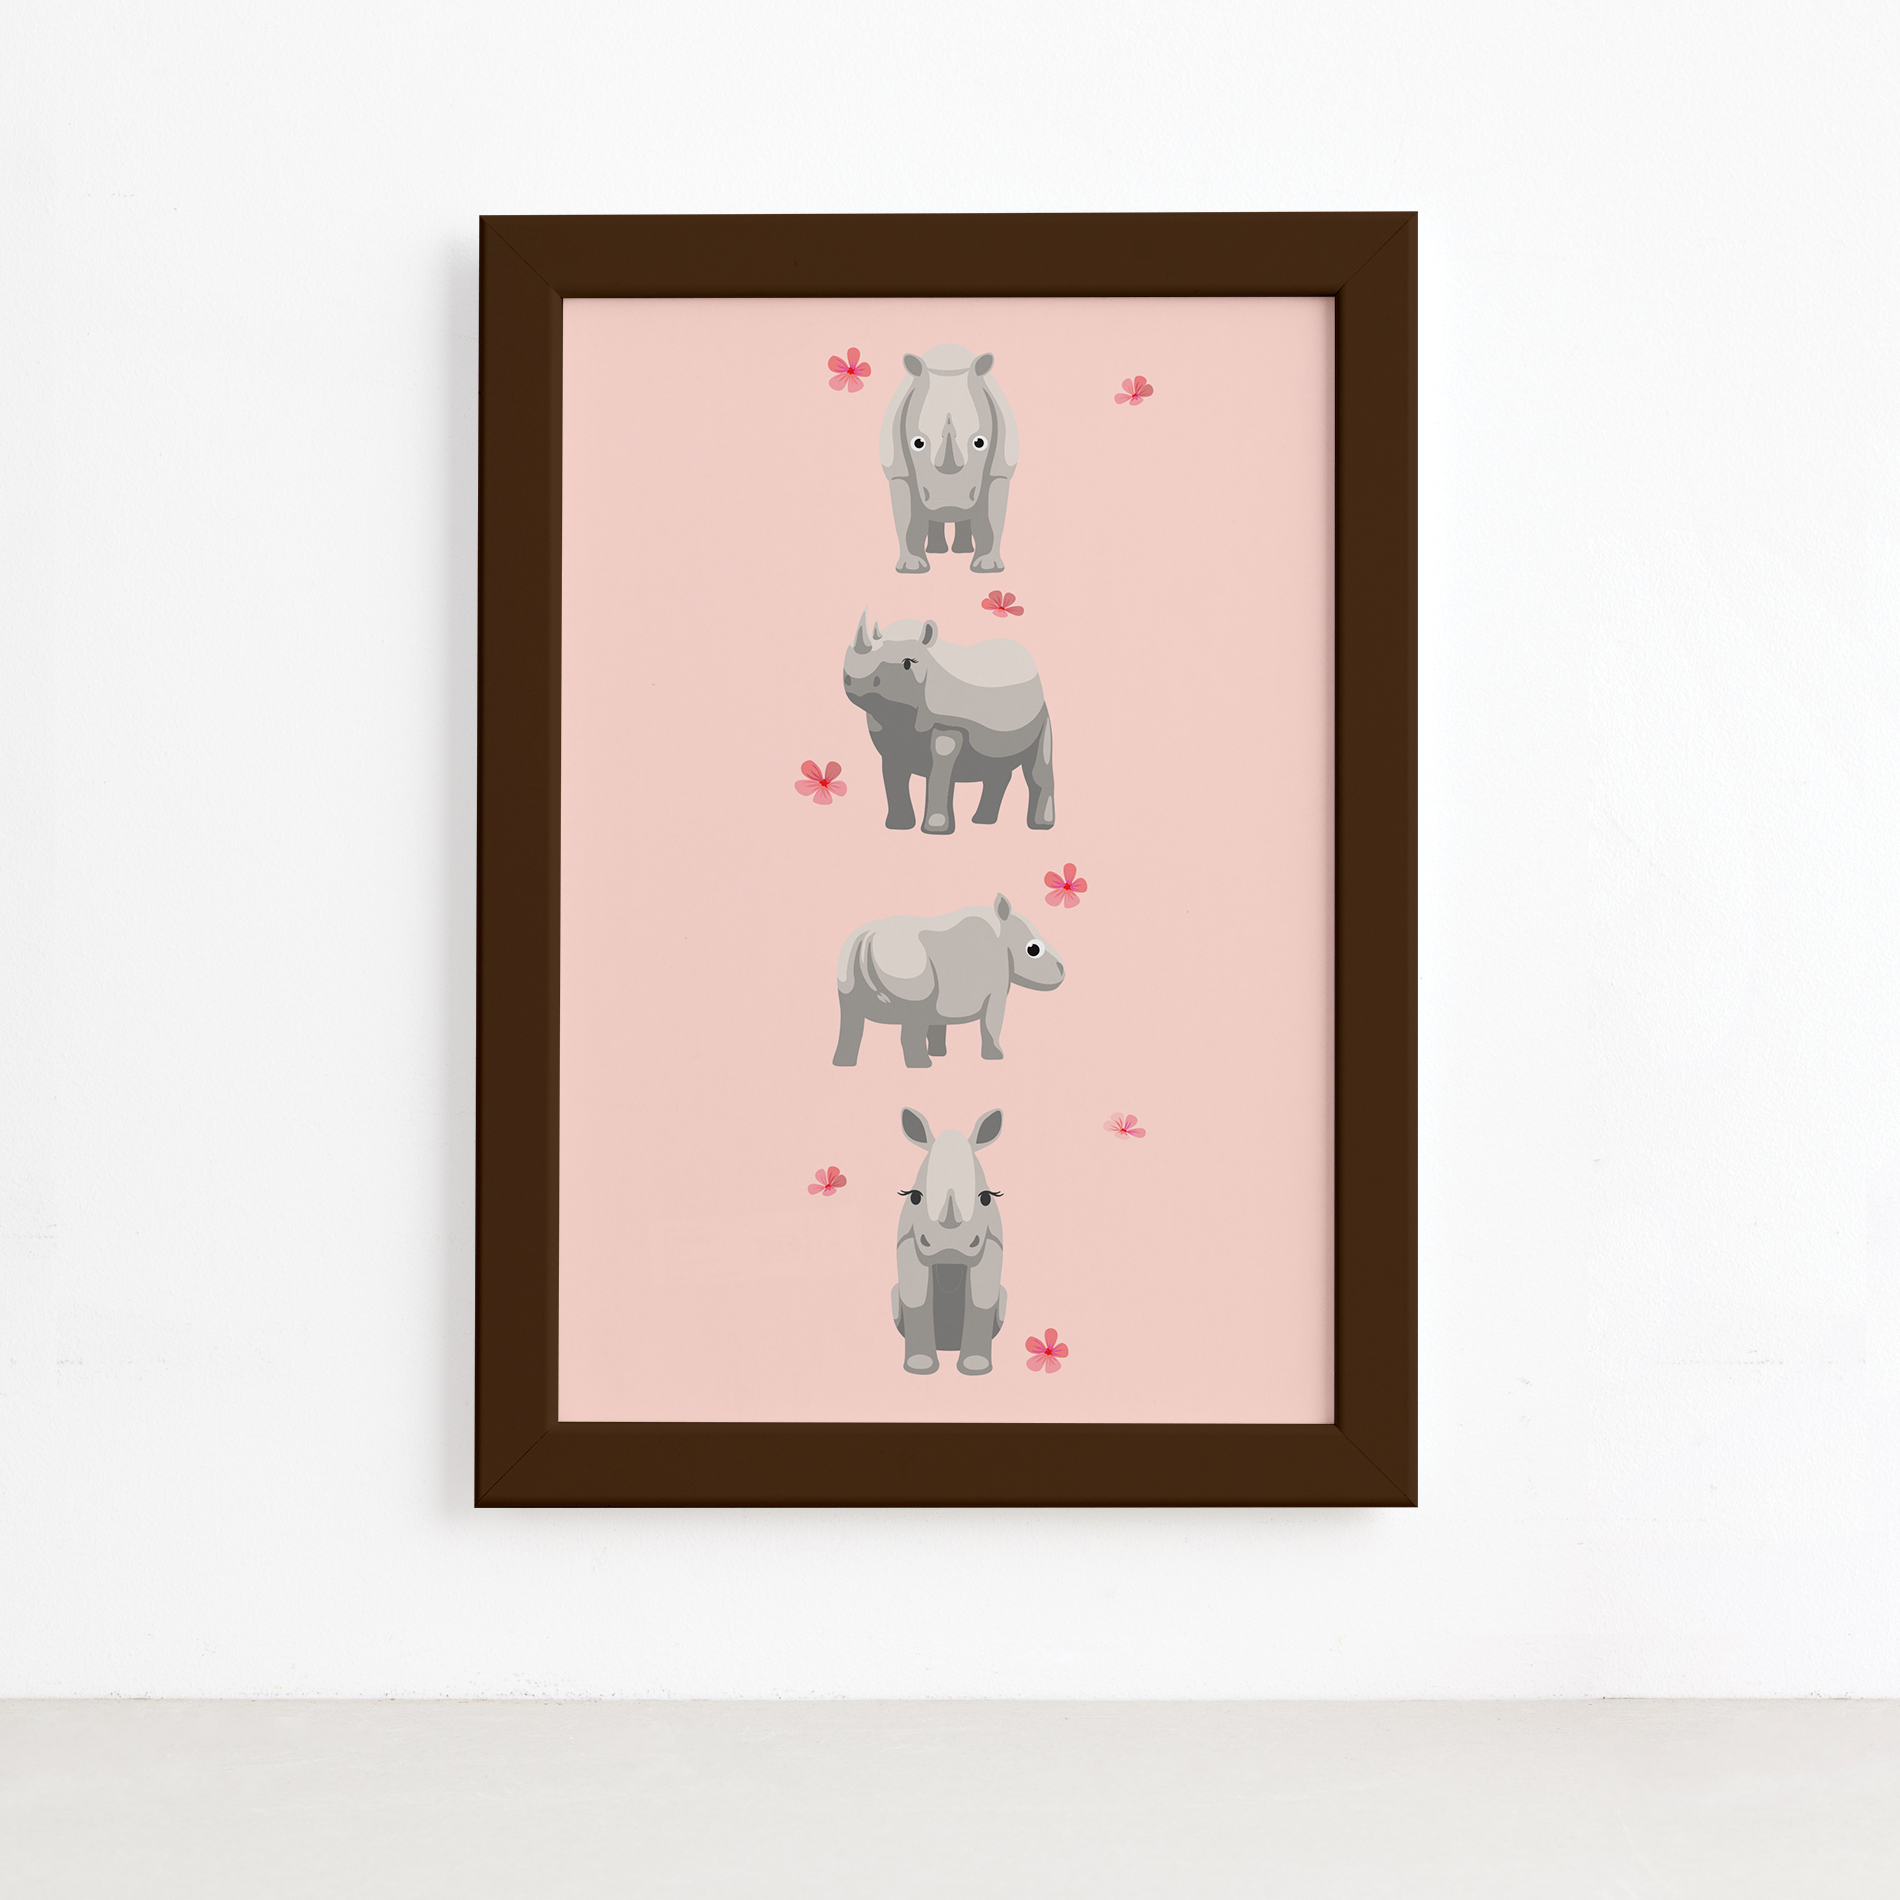 Quadro Infantil Rinoceronte Quarteto Moldura Marrom 22x32cm,Quadro Infantil Rinoceronte Quarteto Moldura Marrom 22x32cm